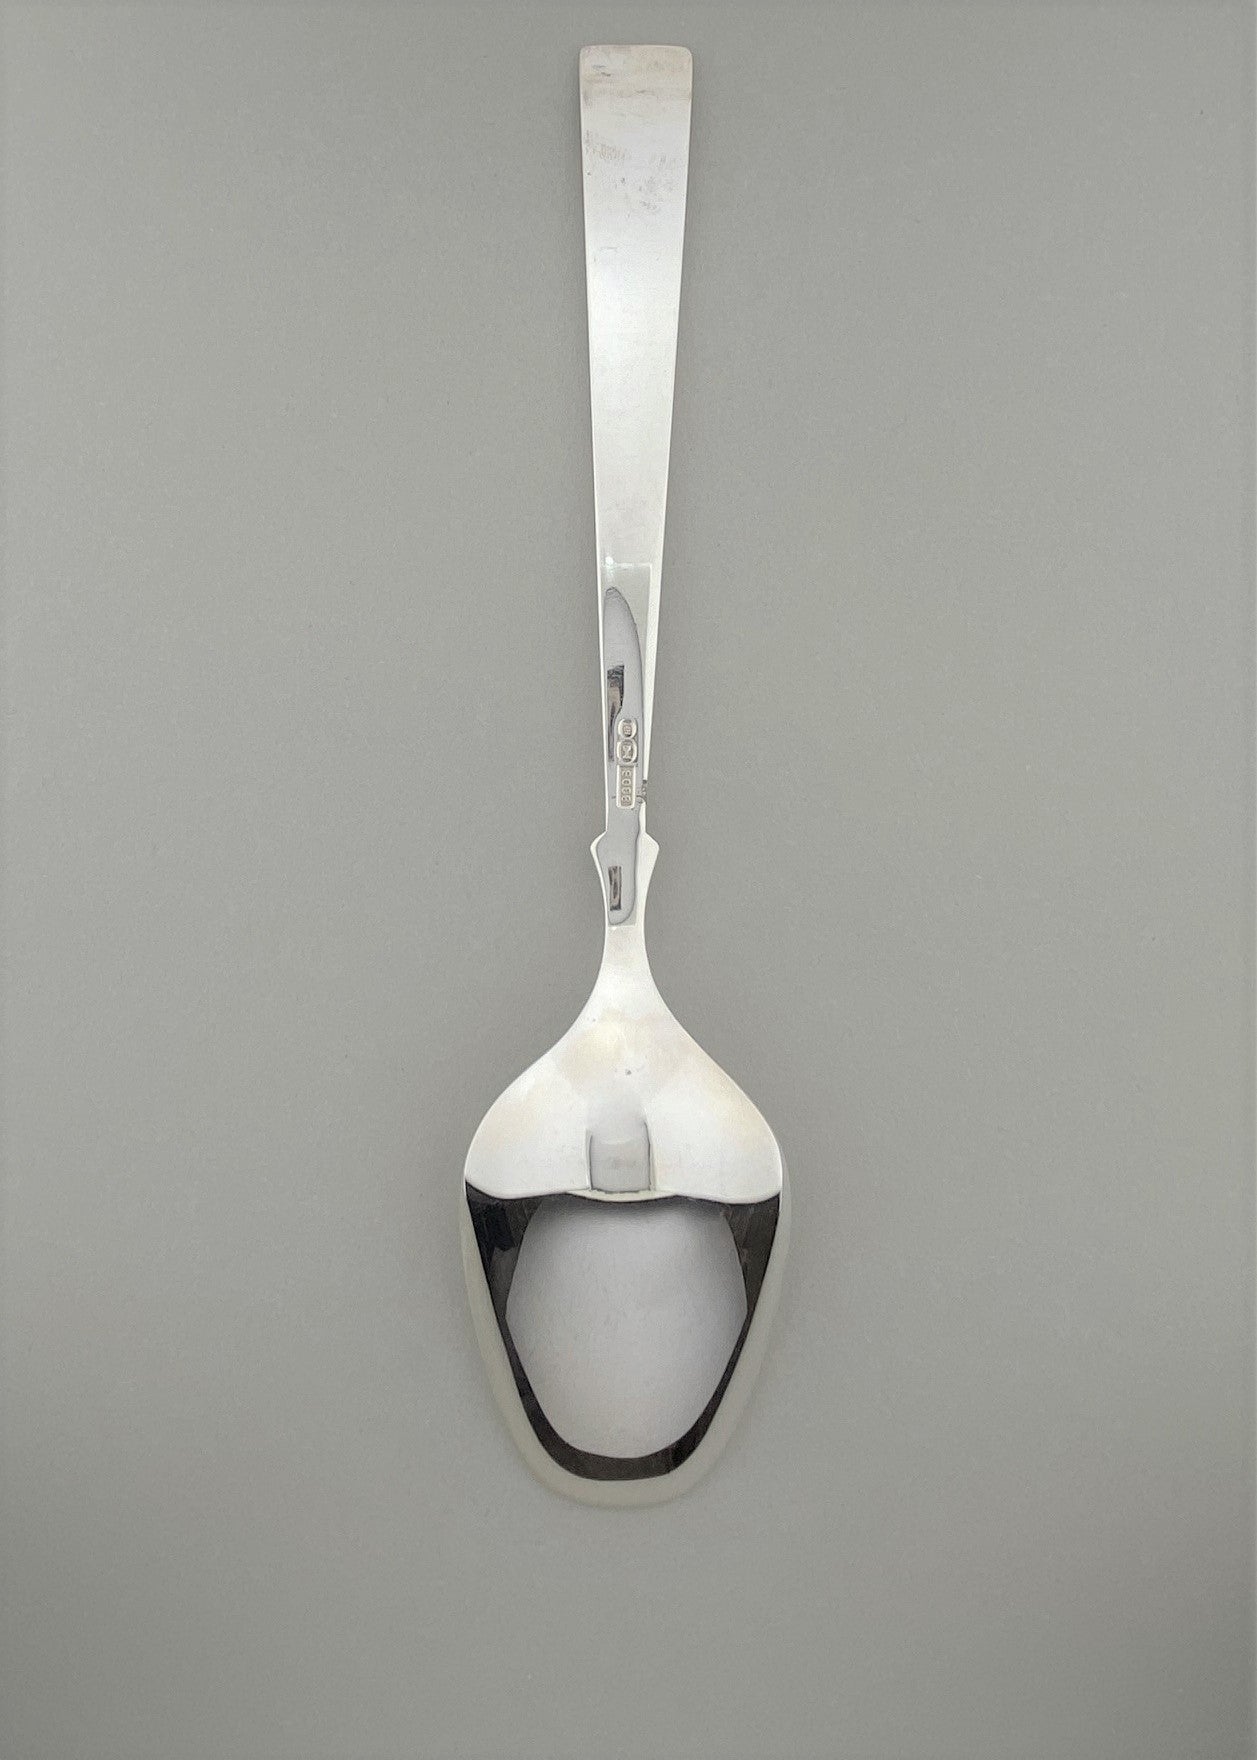 Vintage Heirloom silver serving spoon